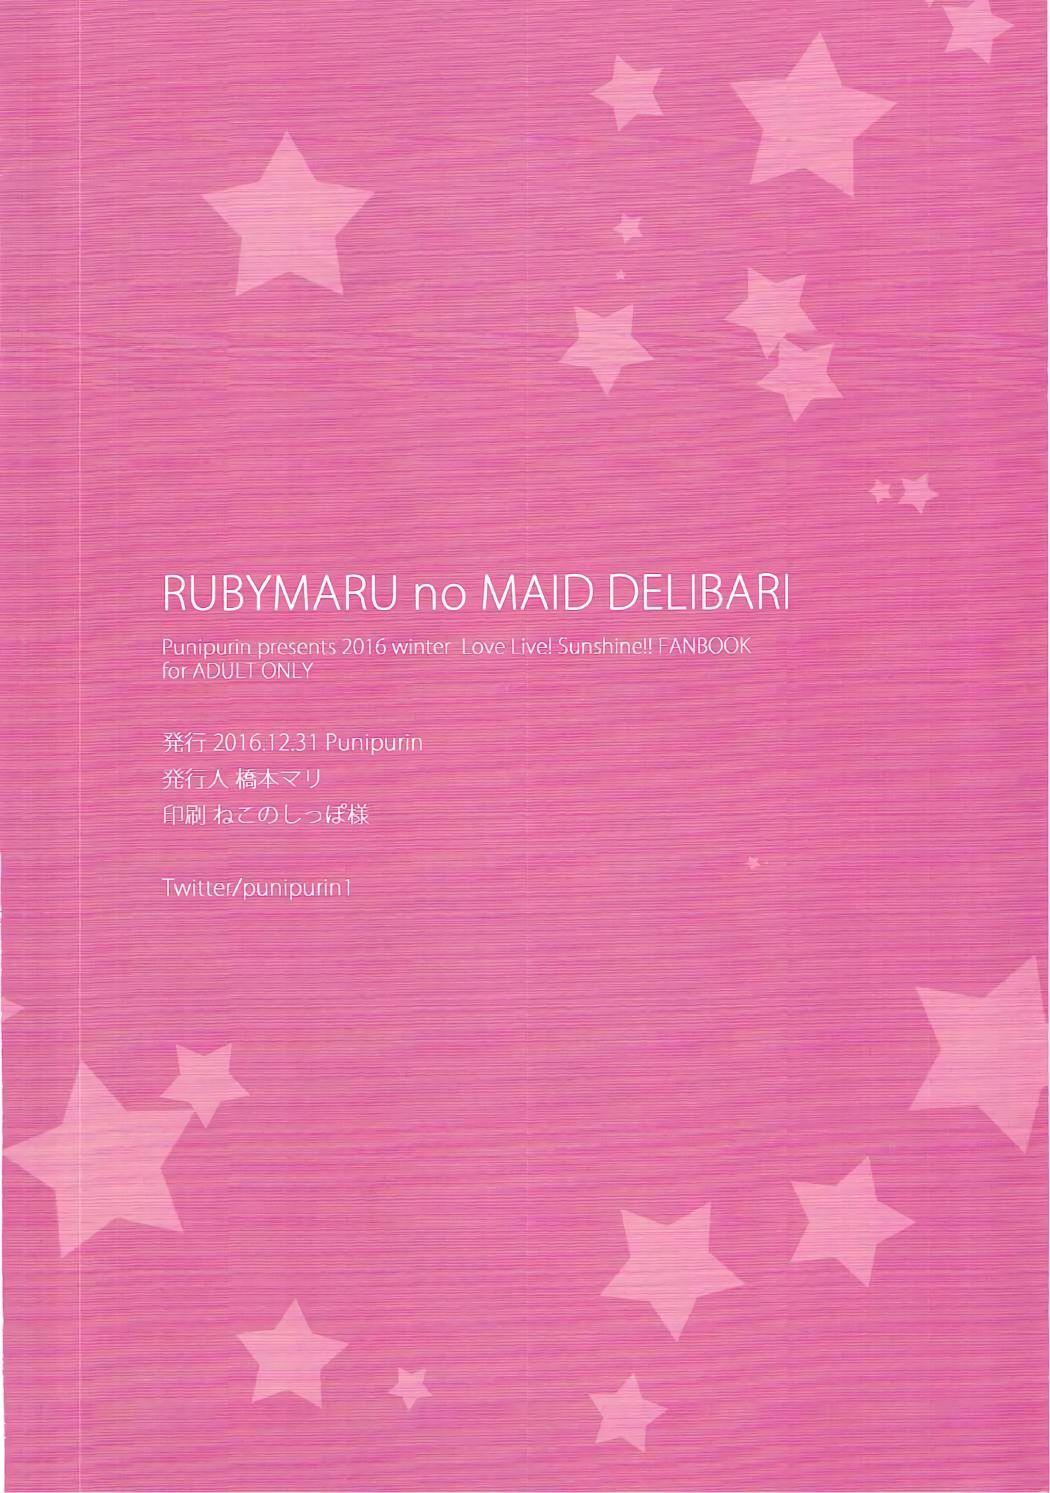 Rubymaru no Maid Delivery 16